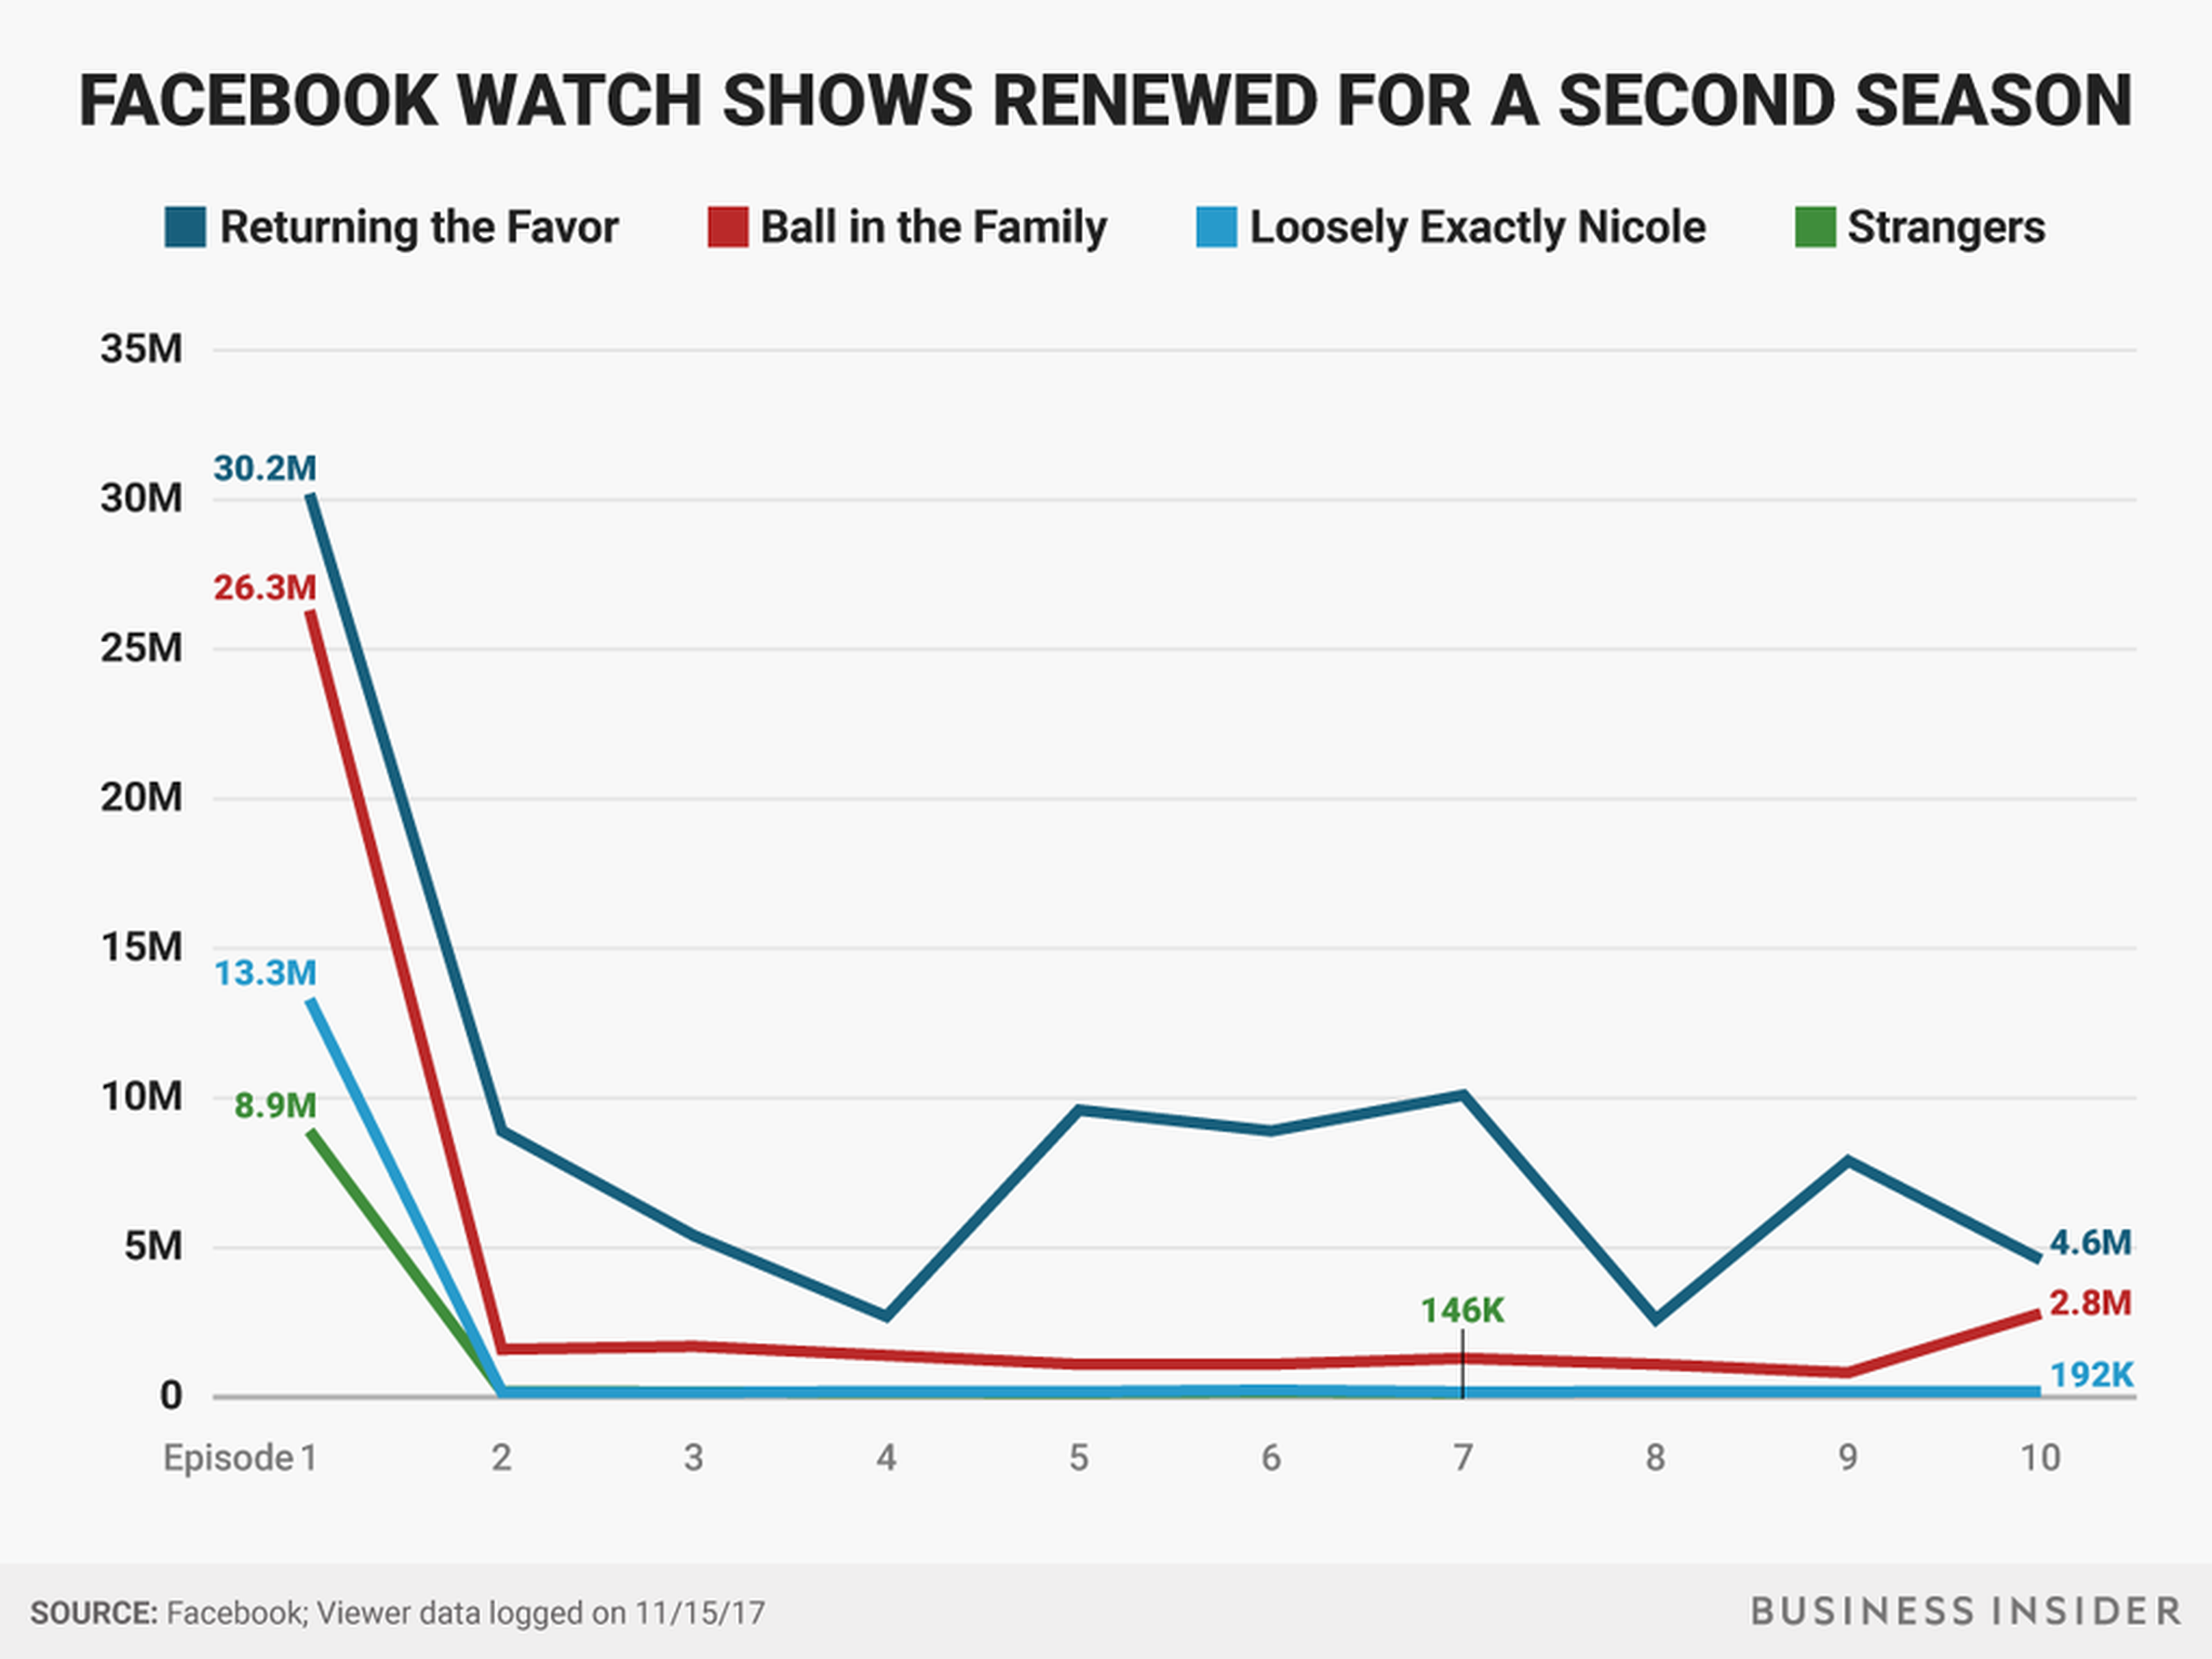 Facebook ha renovado cuatro programas de Watch que no financia directamente.